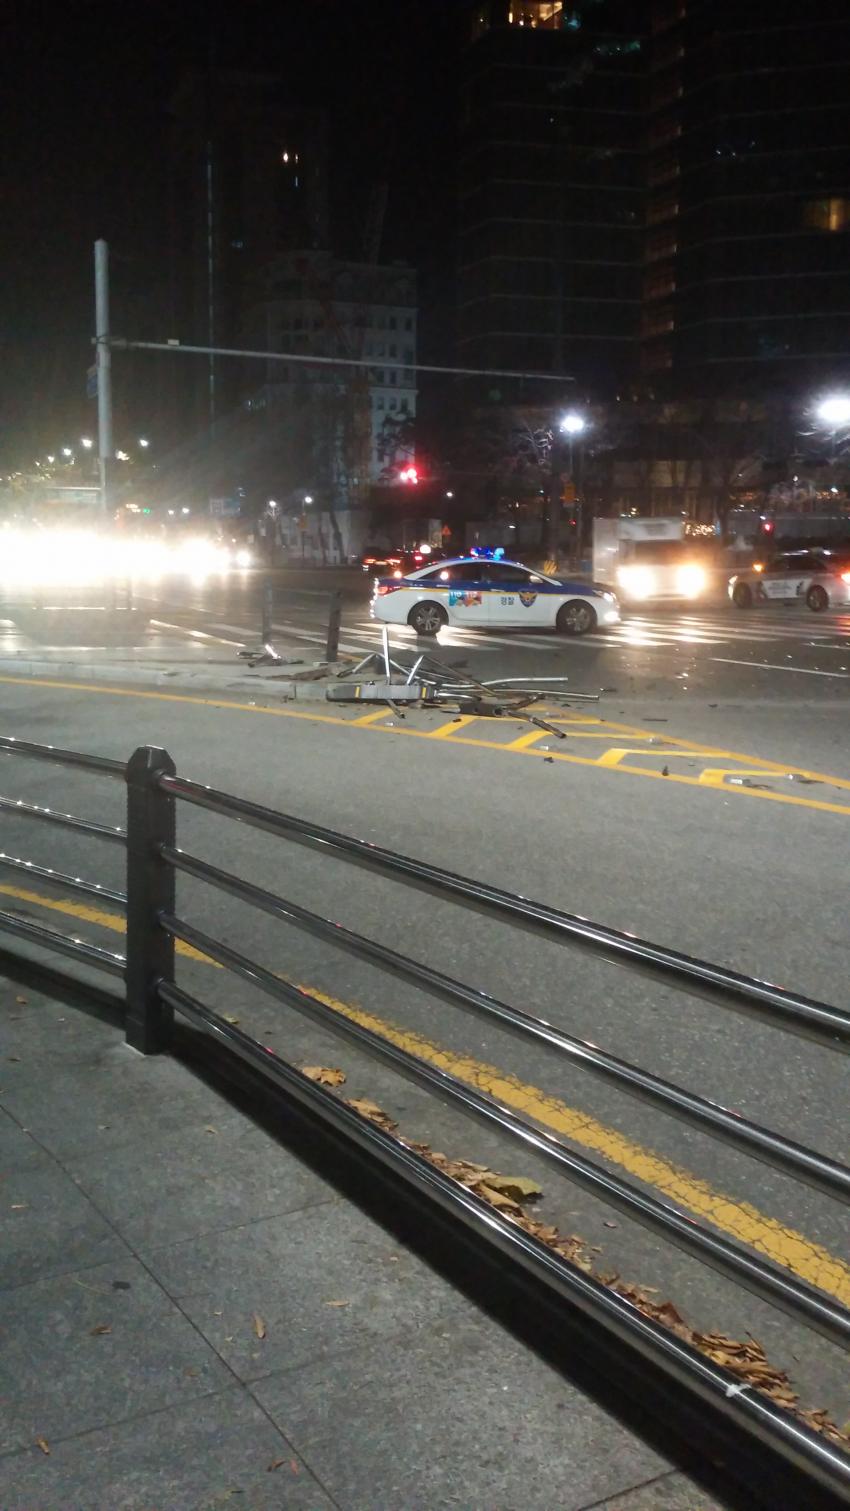 2016년 12월 2일 오전 2시 48분쯤 강정호가 BMW 차량을 몰고 숙소에 가기 위해 봉은사역 방면에서 삼성역 방면으로 편도 7차로 중 7차로를 따라 우회전을 하던 중 서울 삼성역 사거리에서 음주운전 사고를 일으켰다. 사고로 산산조각난 가드레일이 교통섬 인근에 널부러져 있고, 서울 강남경찰서 순찰차가 현장에 출동해 있다.  이 사진은 한 시민이 사고 직후인 오전 3시쯤 사진을 찍어 인터넷 커뮤니티에 올린 사진으로 아직도 올라와 있다.  인터넷 커뮤니티 디시인사이드 캡처